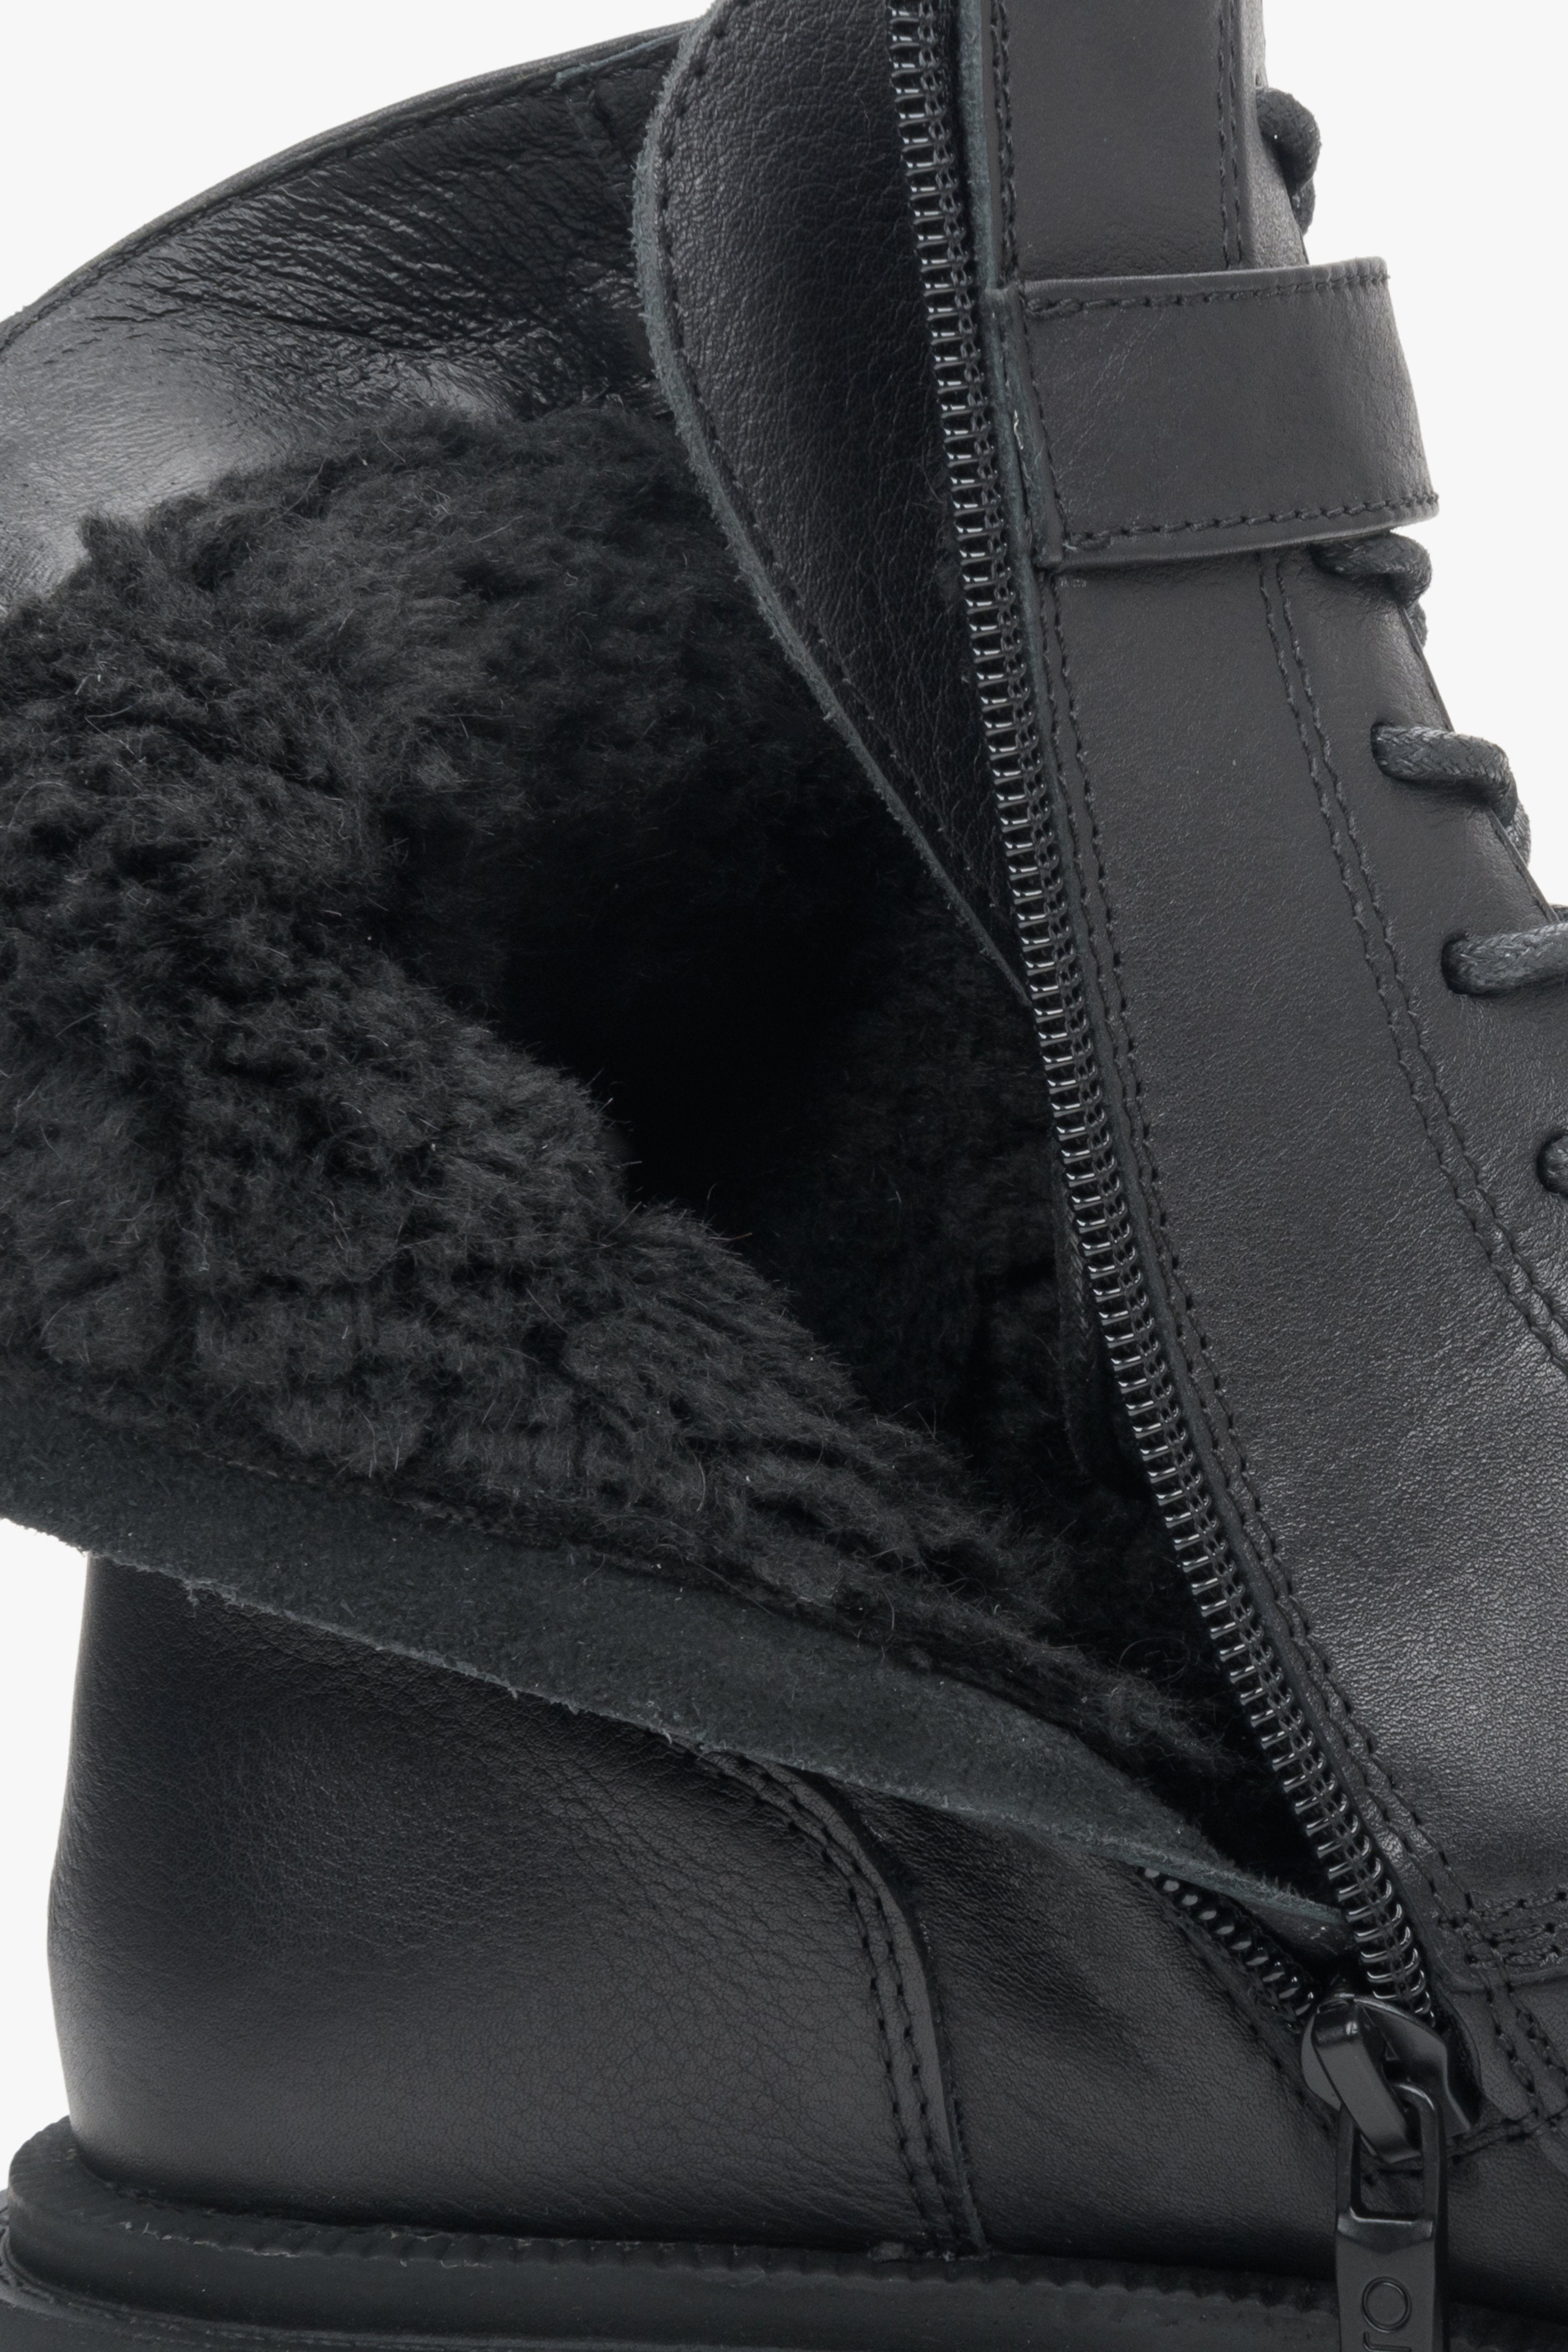 Botki zimowe damskie z ociepleniem marki Estro ze skóry naturalnej - zbliżenie na ocieplinę buta.